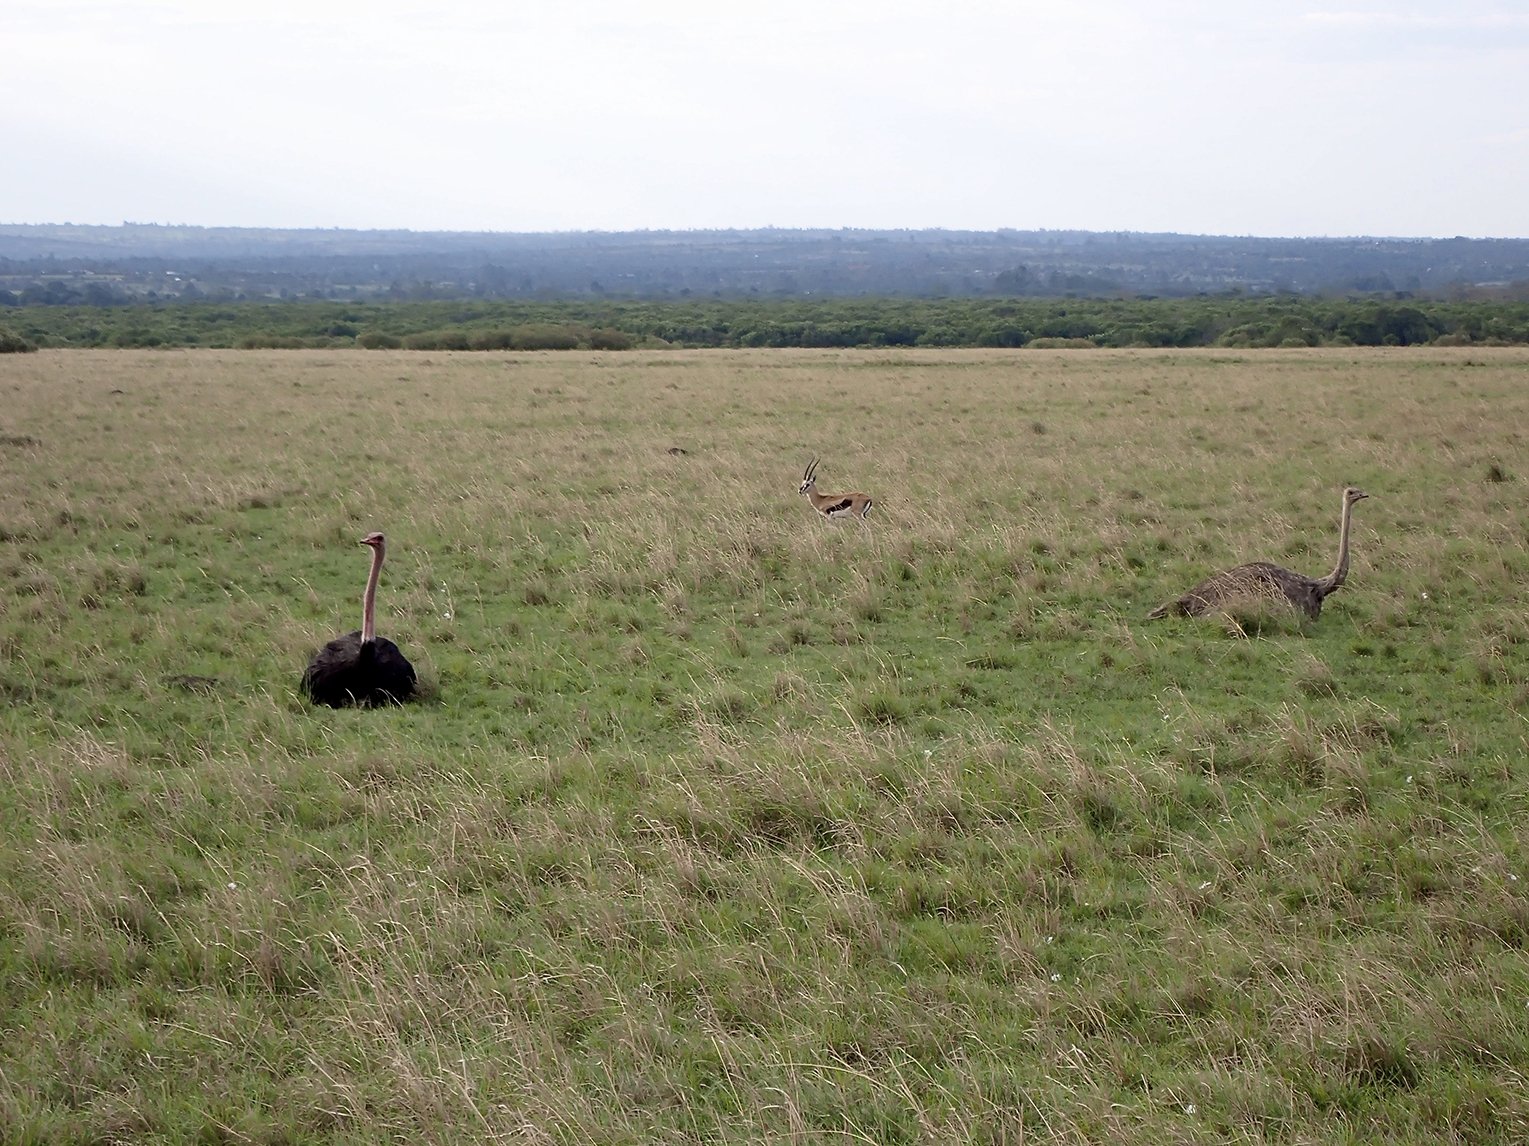 Male and female Masai Ostrich